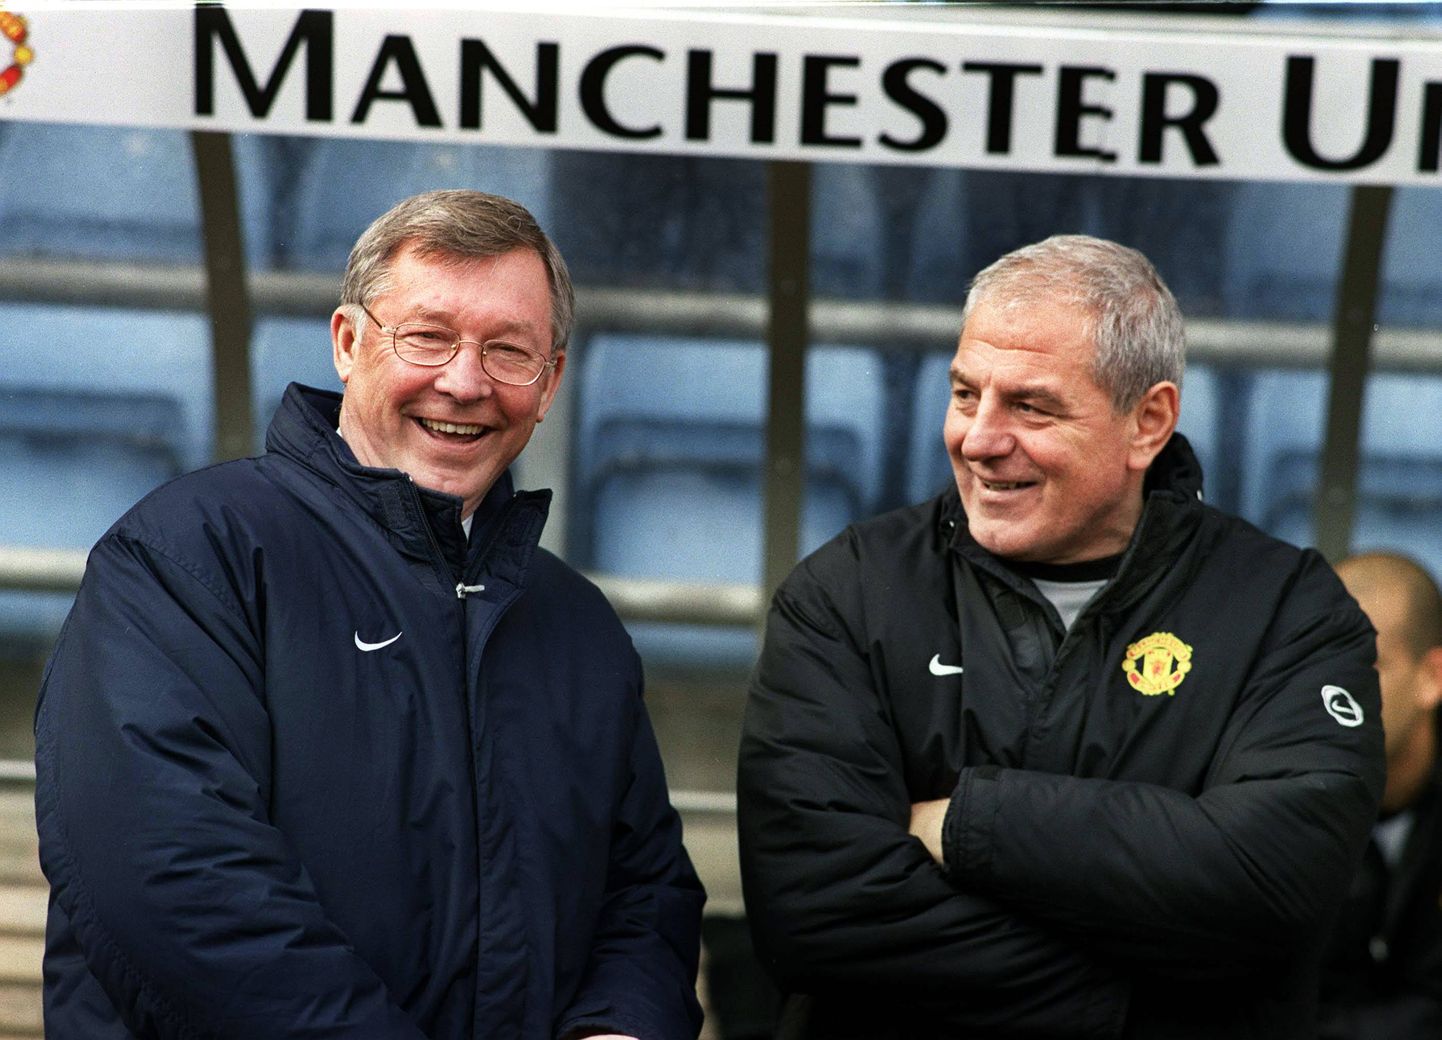 Manchesteri treenerid 2002. aastal: Sir Alex Ferguson ja Walter Smith.